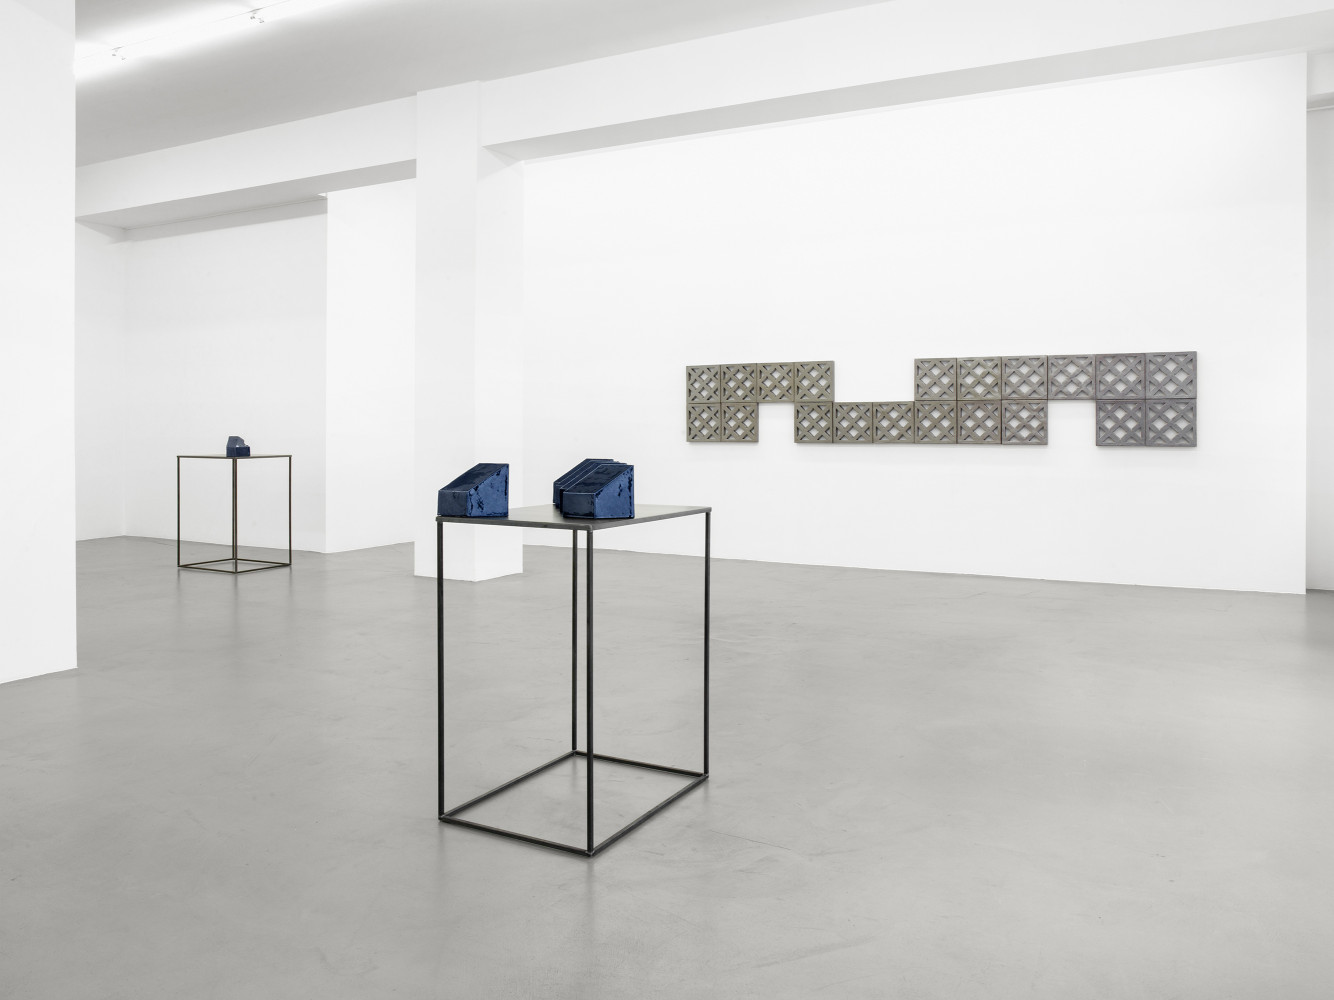 Bettina Pousttchi, ‘Ceramics’, Installationsansicht, Buchmann Galerie, 2016